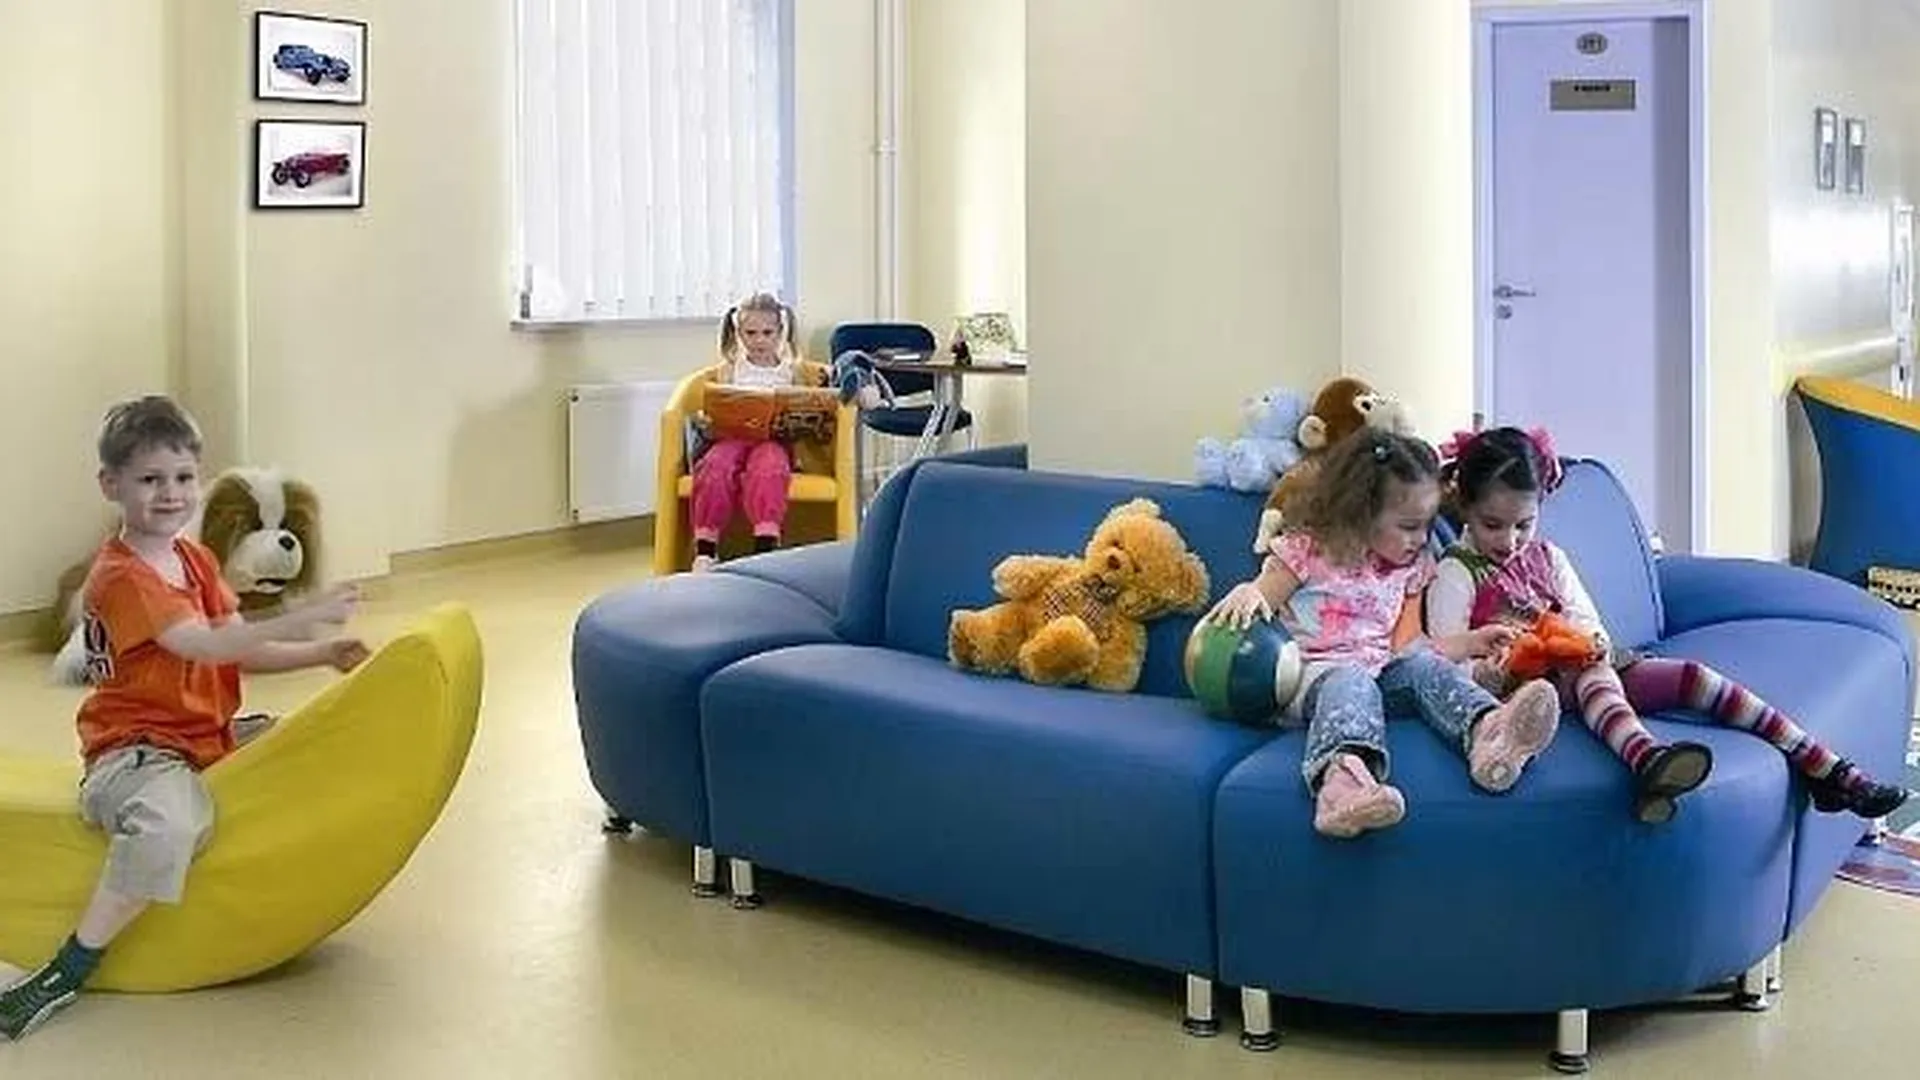 Госпиталь «Лапино» расширяется: что это даст здравоохранению Подмосковья